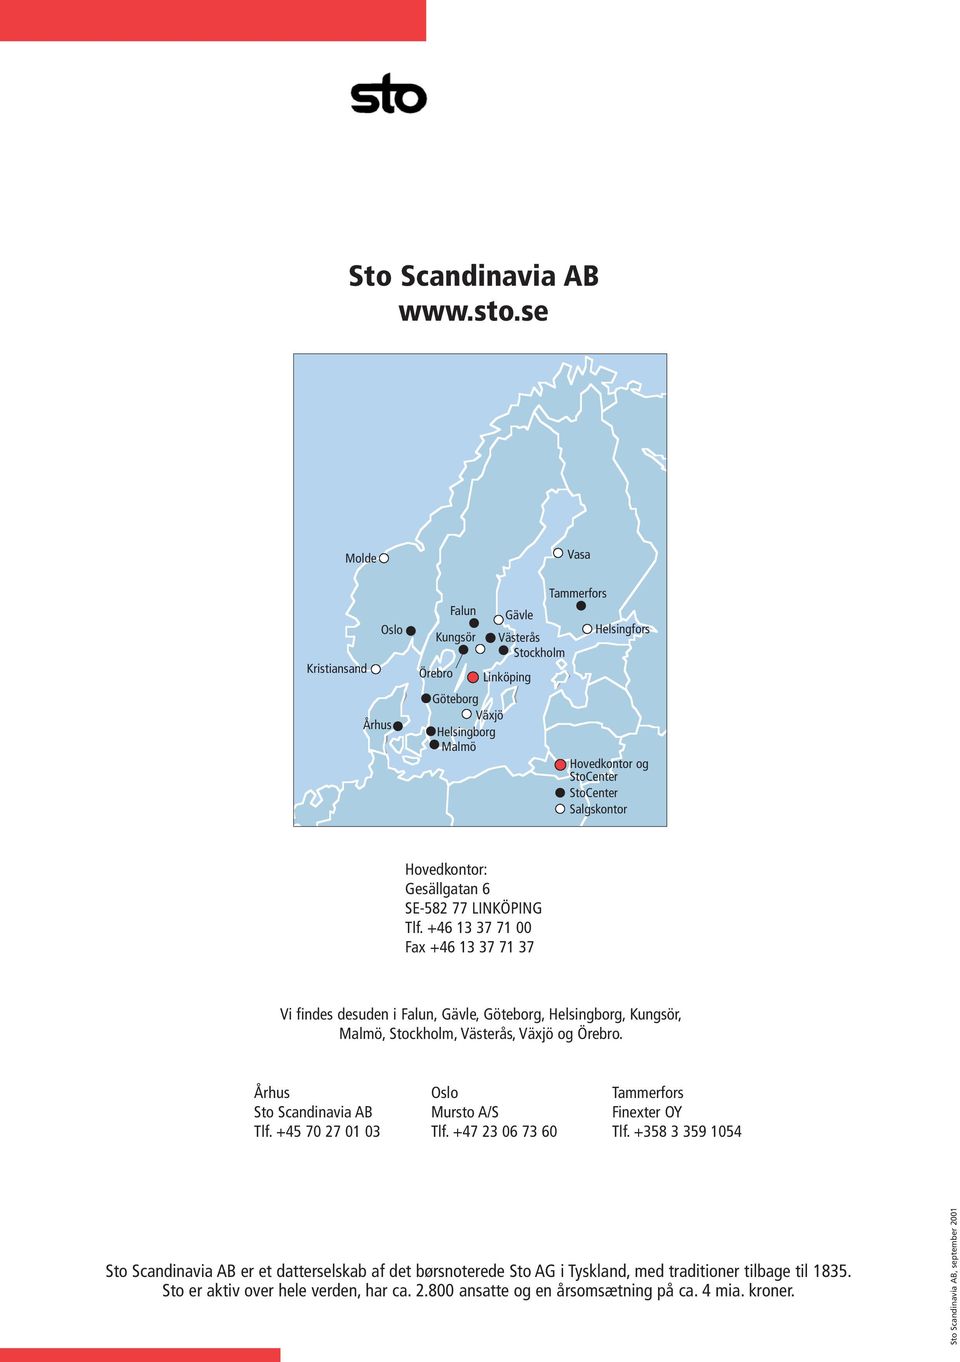 Hovedkontor: Gesällgatan 6 SE-582 77 LINKÖPING Tlf. +46 13 37 71 00 Fax +46 13 37 71 37 Vi findes desuden i Falun, Gävle, Göteborg, Helsingborg, Kungsör, Malmö, Stockholm, Västerås, Växjö og Örebro.